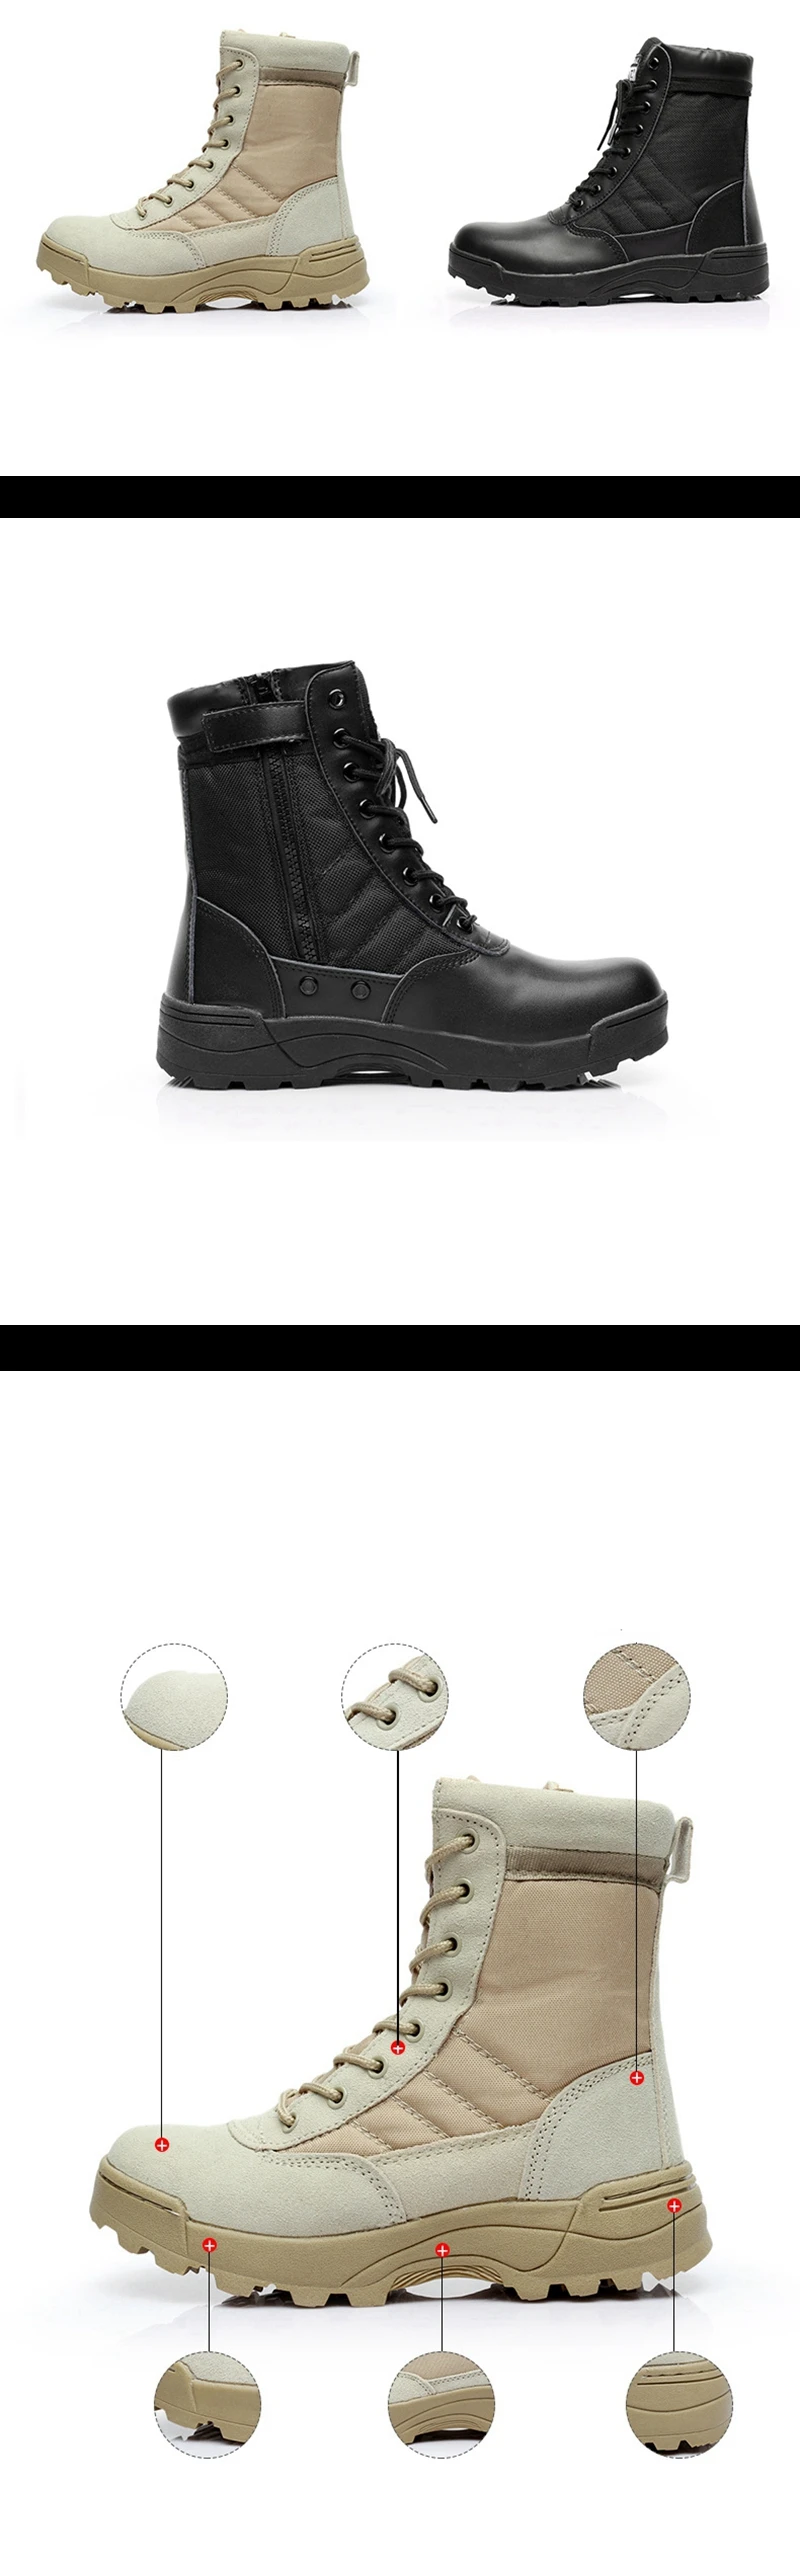 Мужские армейские ботинки для пеших прогулок; мужские тактические ботинки на молнии; Прямая поставка; Мужская обувь SWAT; цвет черный, песочный; военные ботинки